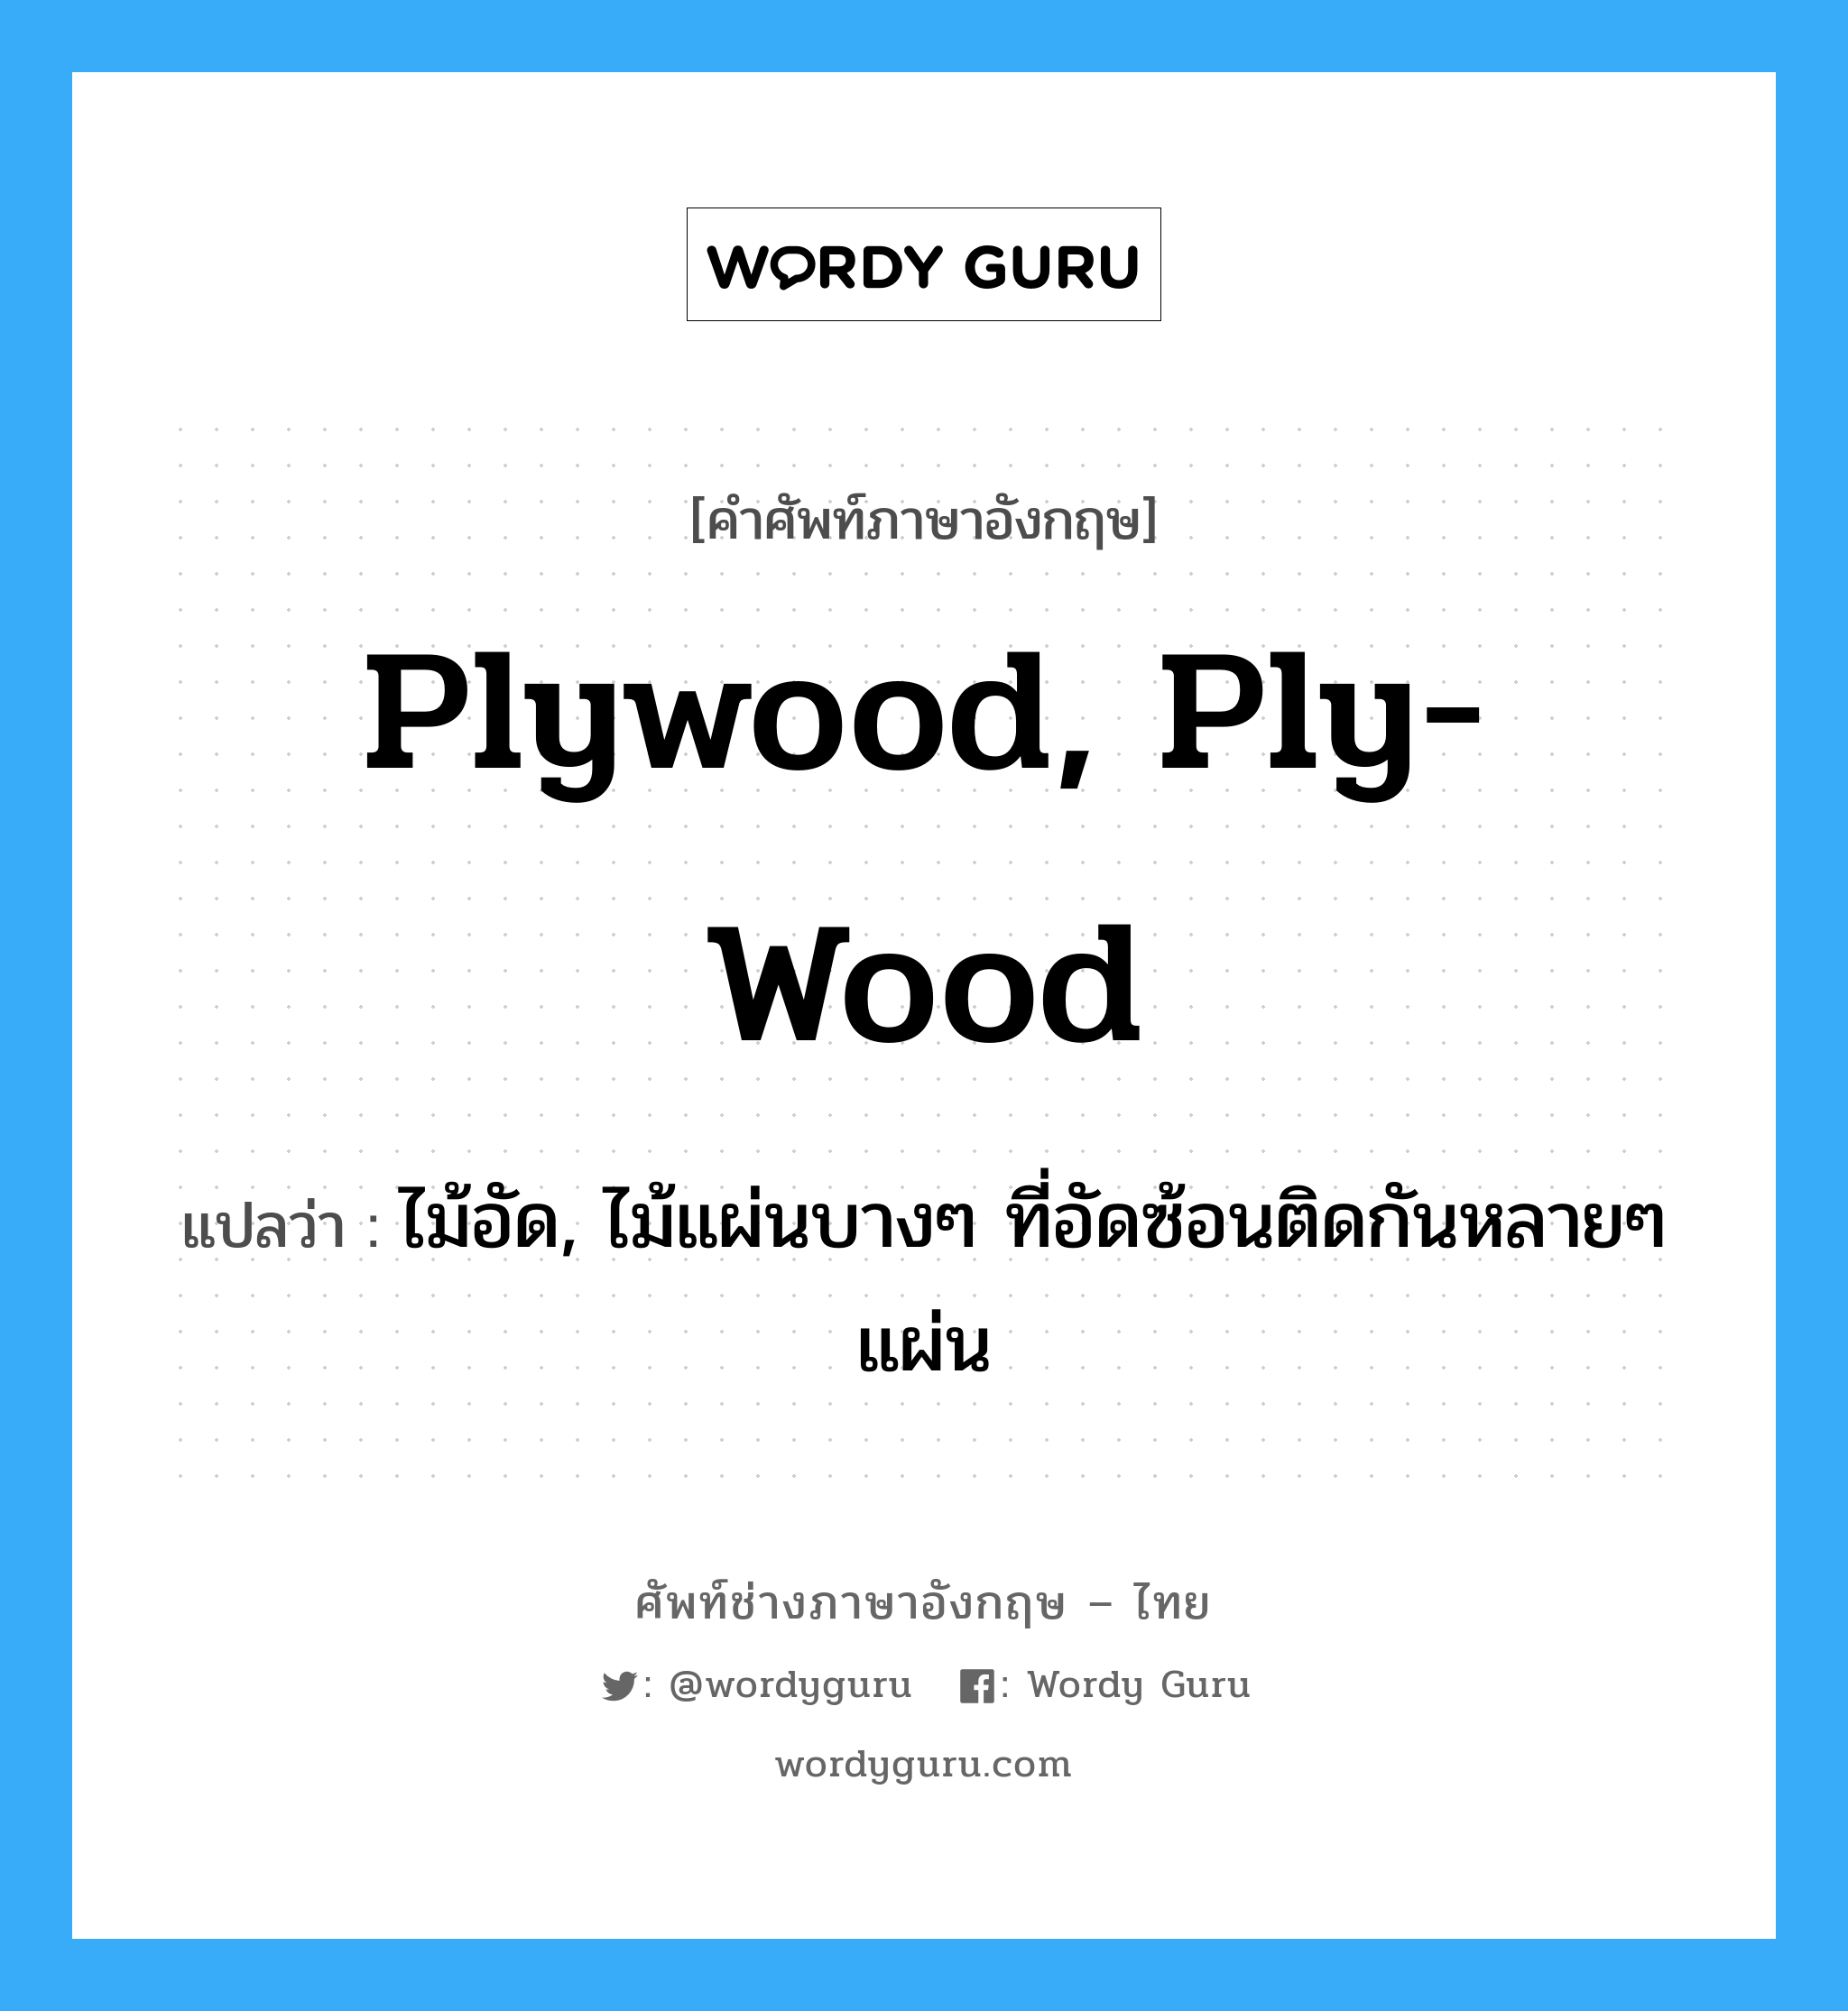 plywood, ply-wood แปลว่า?, คำศัพท์ช่างภาษาอังกฤษ - ไทย plywood, ply-wood คำศัพท์ภาษาอังกฤษ plywood, ply-wood แปลว่า ไม้อัด, ไม้แผ่นบางๆ ที่อัดซ้อนติดกันหลายๆ แผ่น